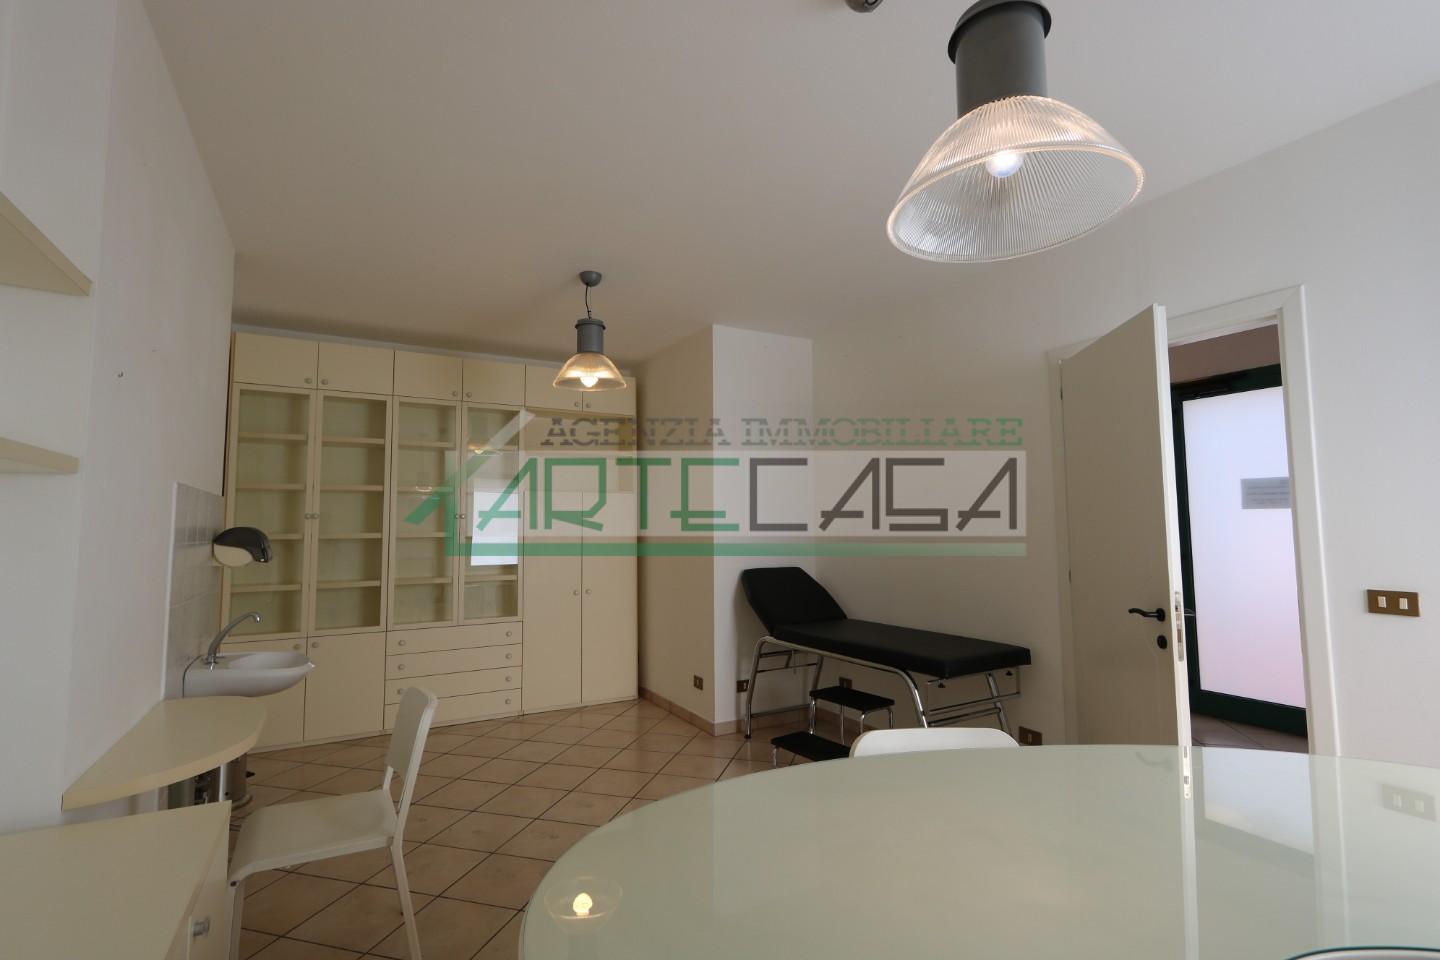 Ufficio / Studio in affitto a Buti, 2 locali, prezzo € 490 | PortaleAgenzieImmobiliari.it